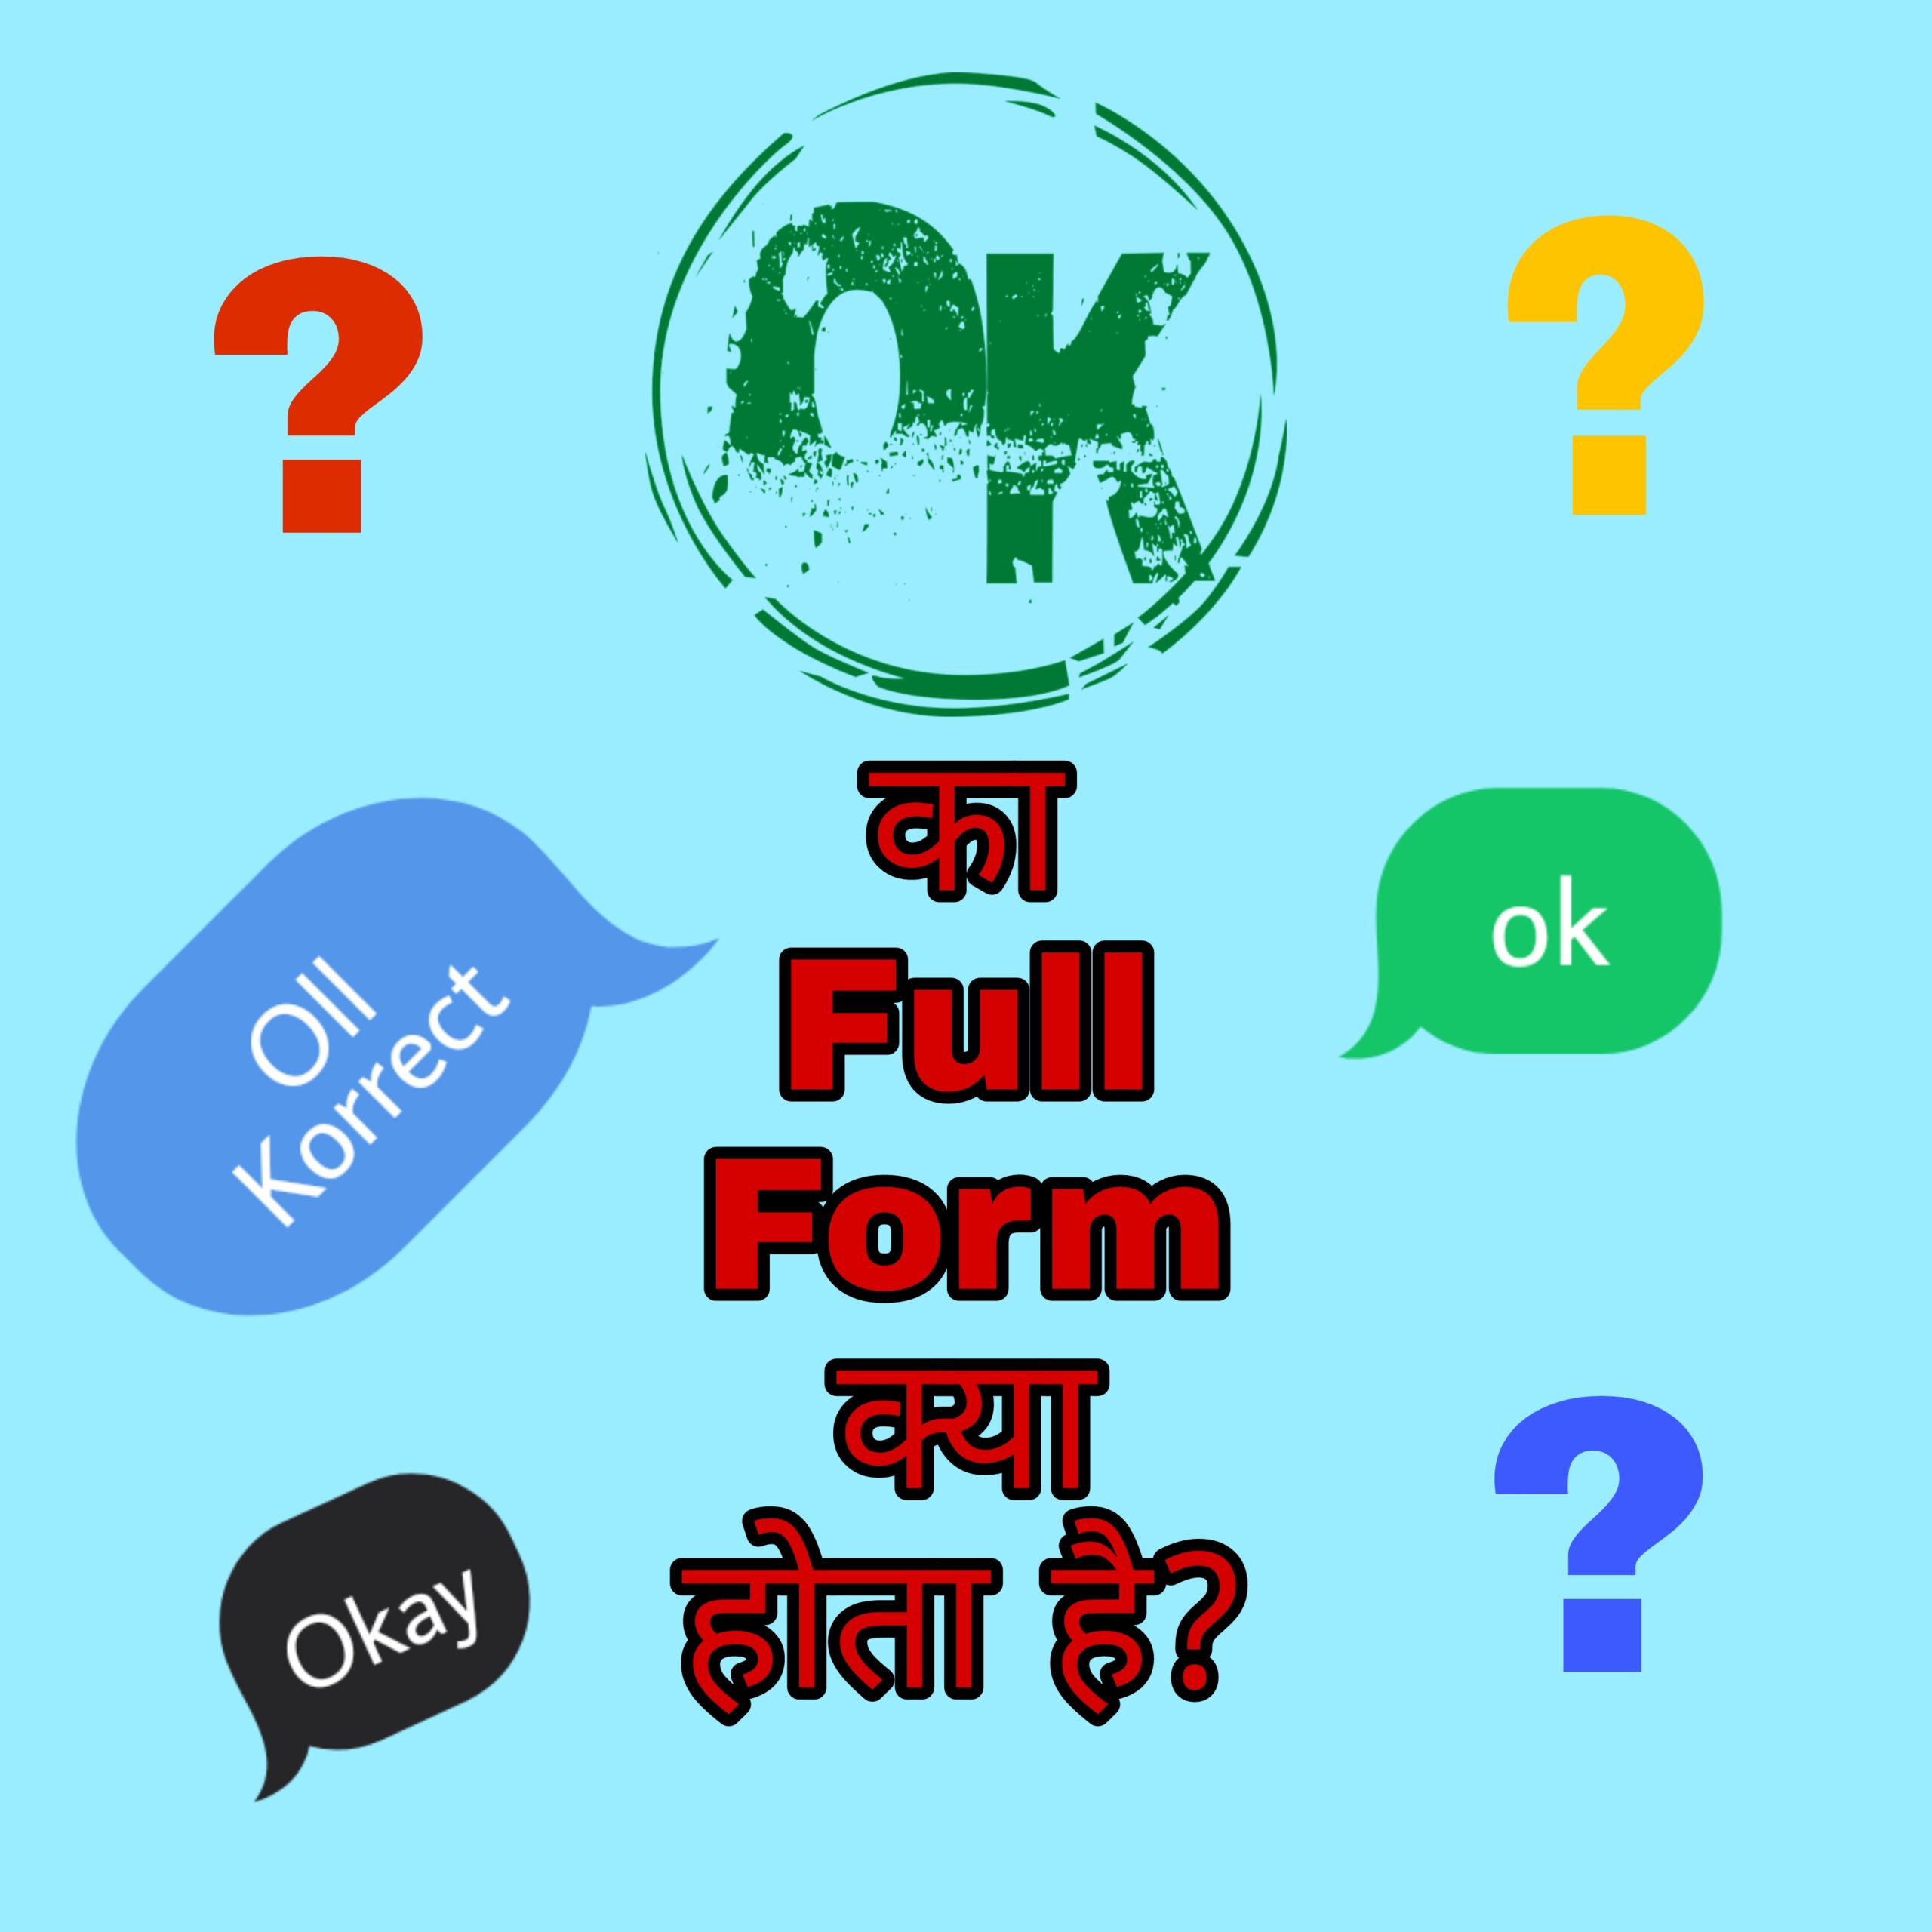 OK ka Full Form क्या होता है?